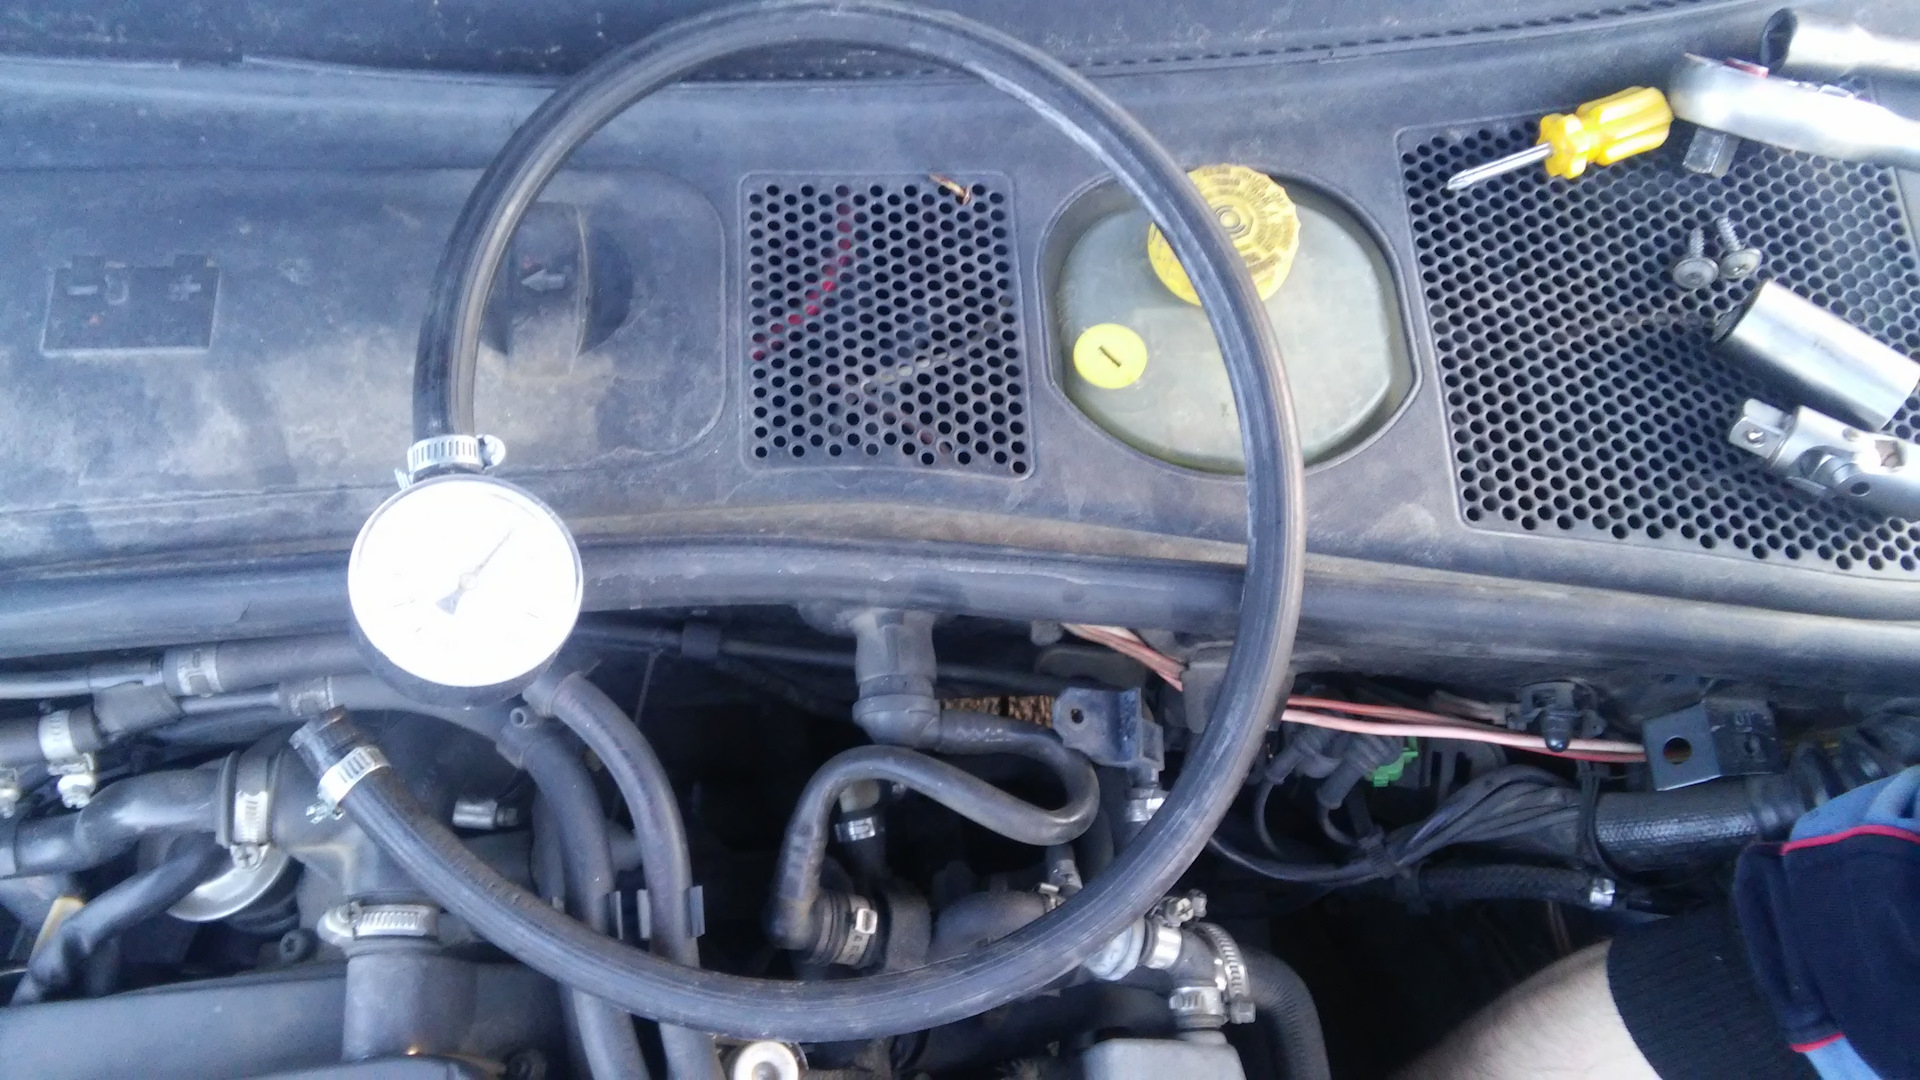 Датчик масла фольксваген пассат б5. Датчик давления масла VW Passat b5 1.8 Turbo. Датчик давления масла Passat b5. Датчик давления масла Пассат б5 1.8 турбо. Passat b5.5 1.6 датчик давления масла.